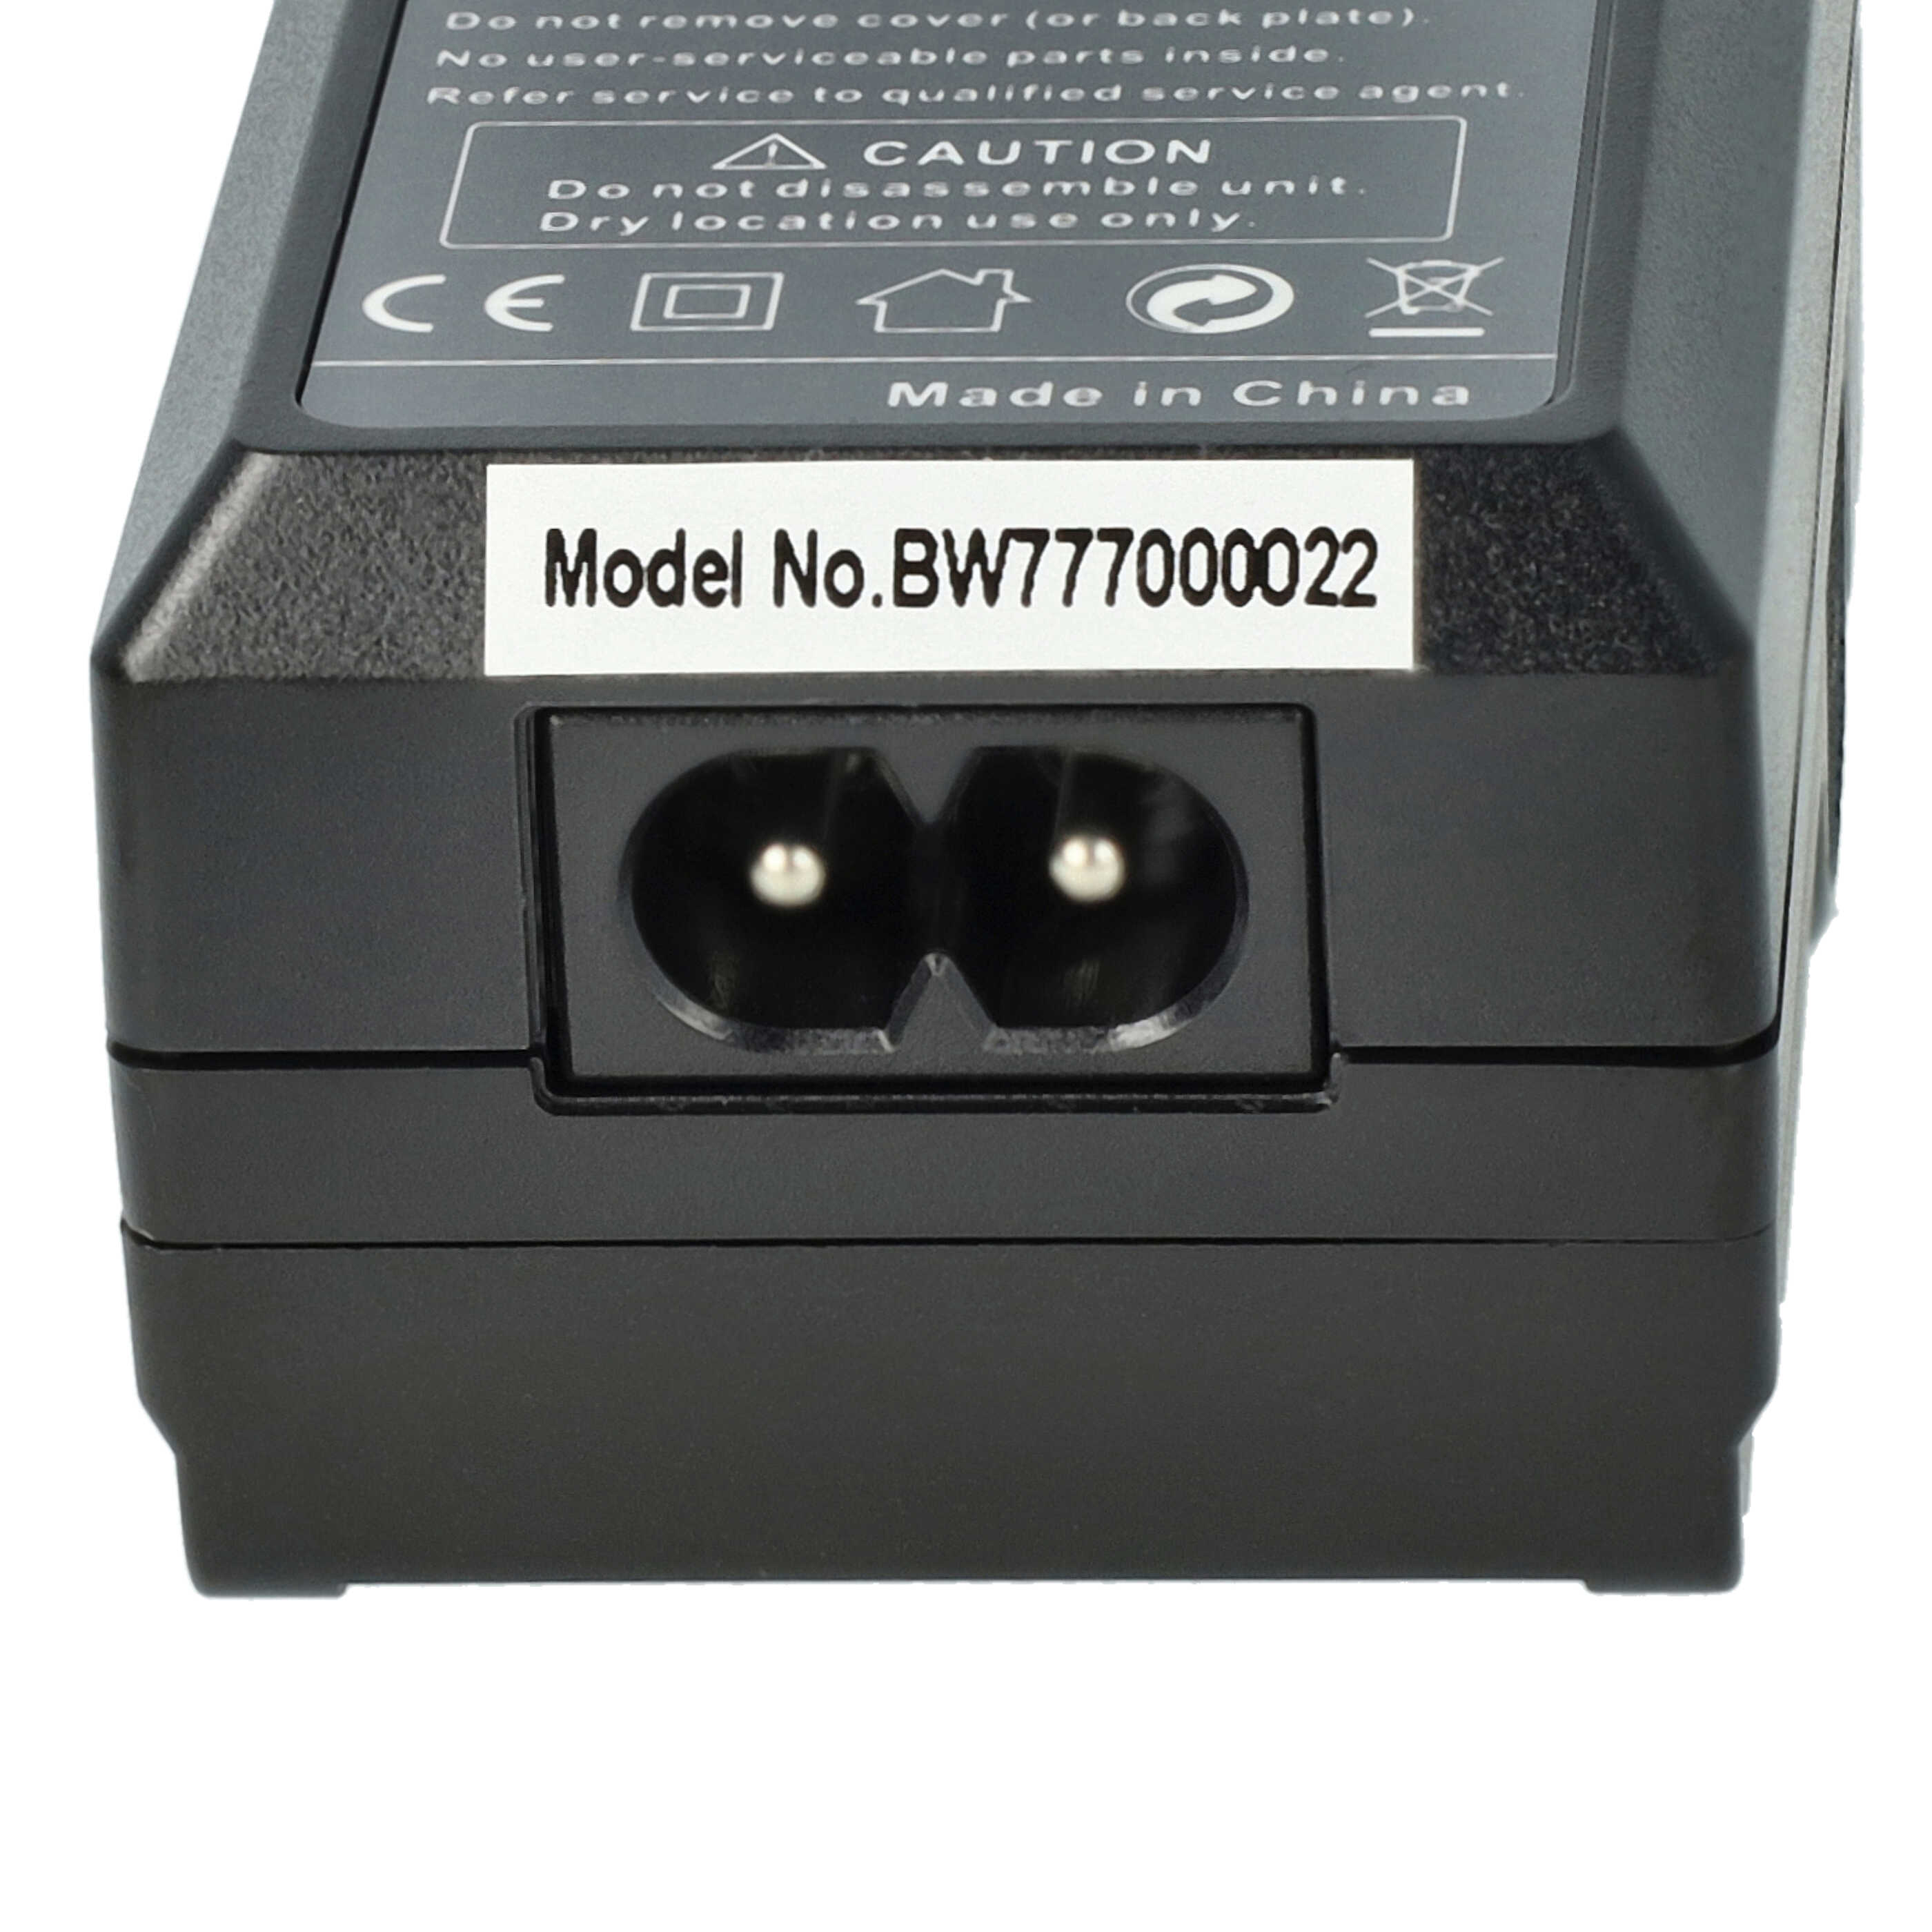 Caricabatterie + adattatore da auto per fotocamera Olympus - 0,6A 8,4V 88,5cm